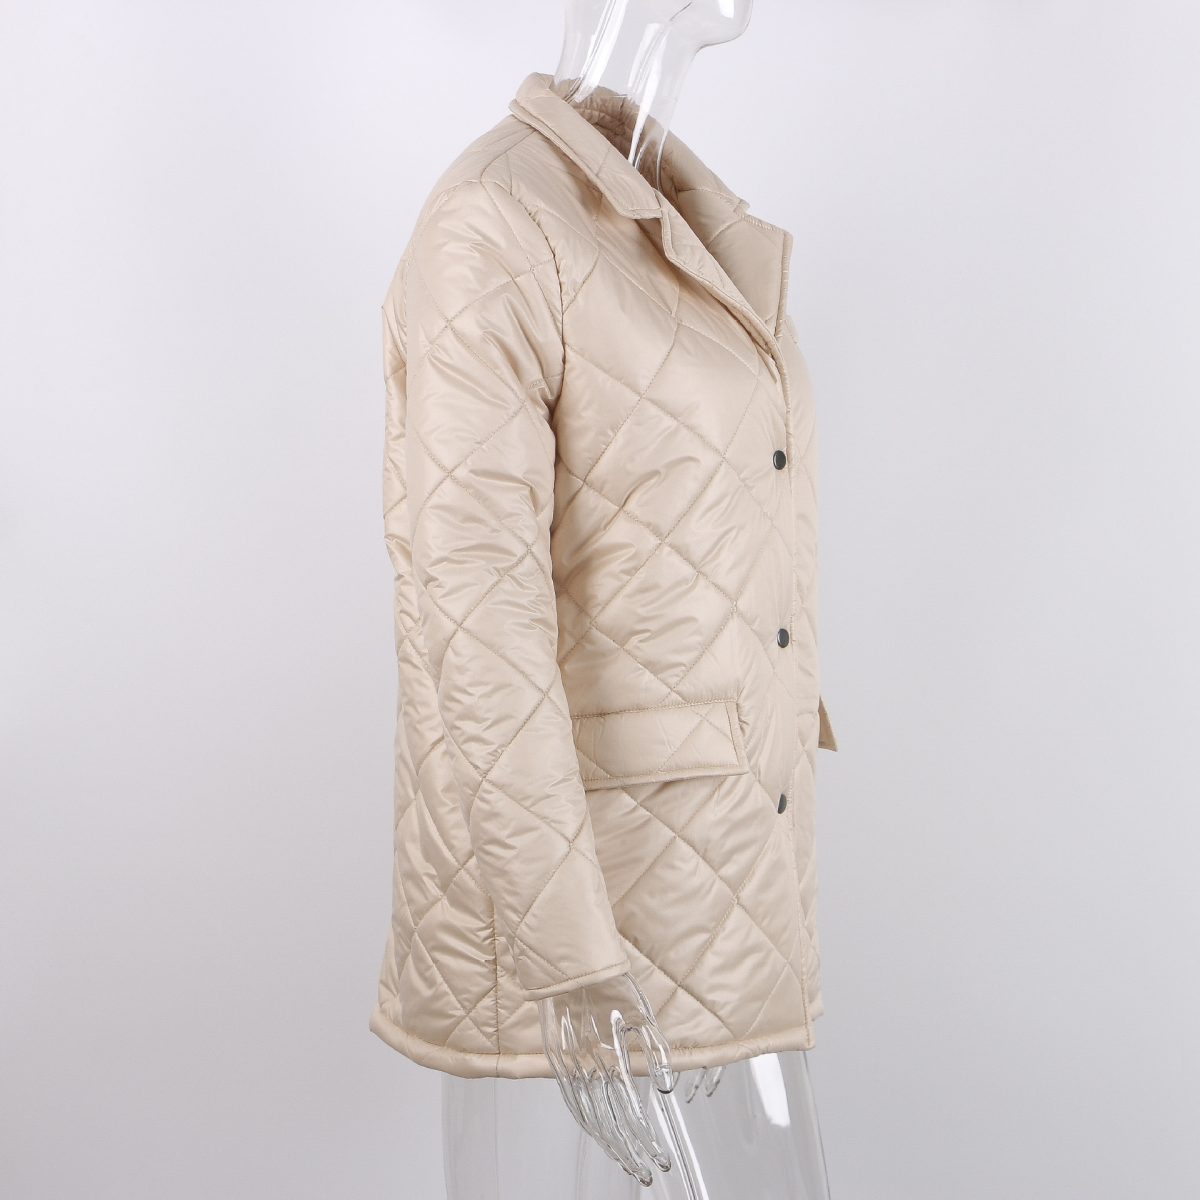 Retro Winter Long Cut Coat - Coats & Jackets - Uniqistic.com